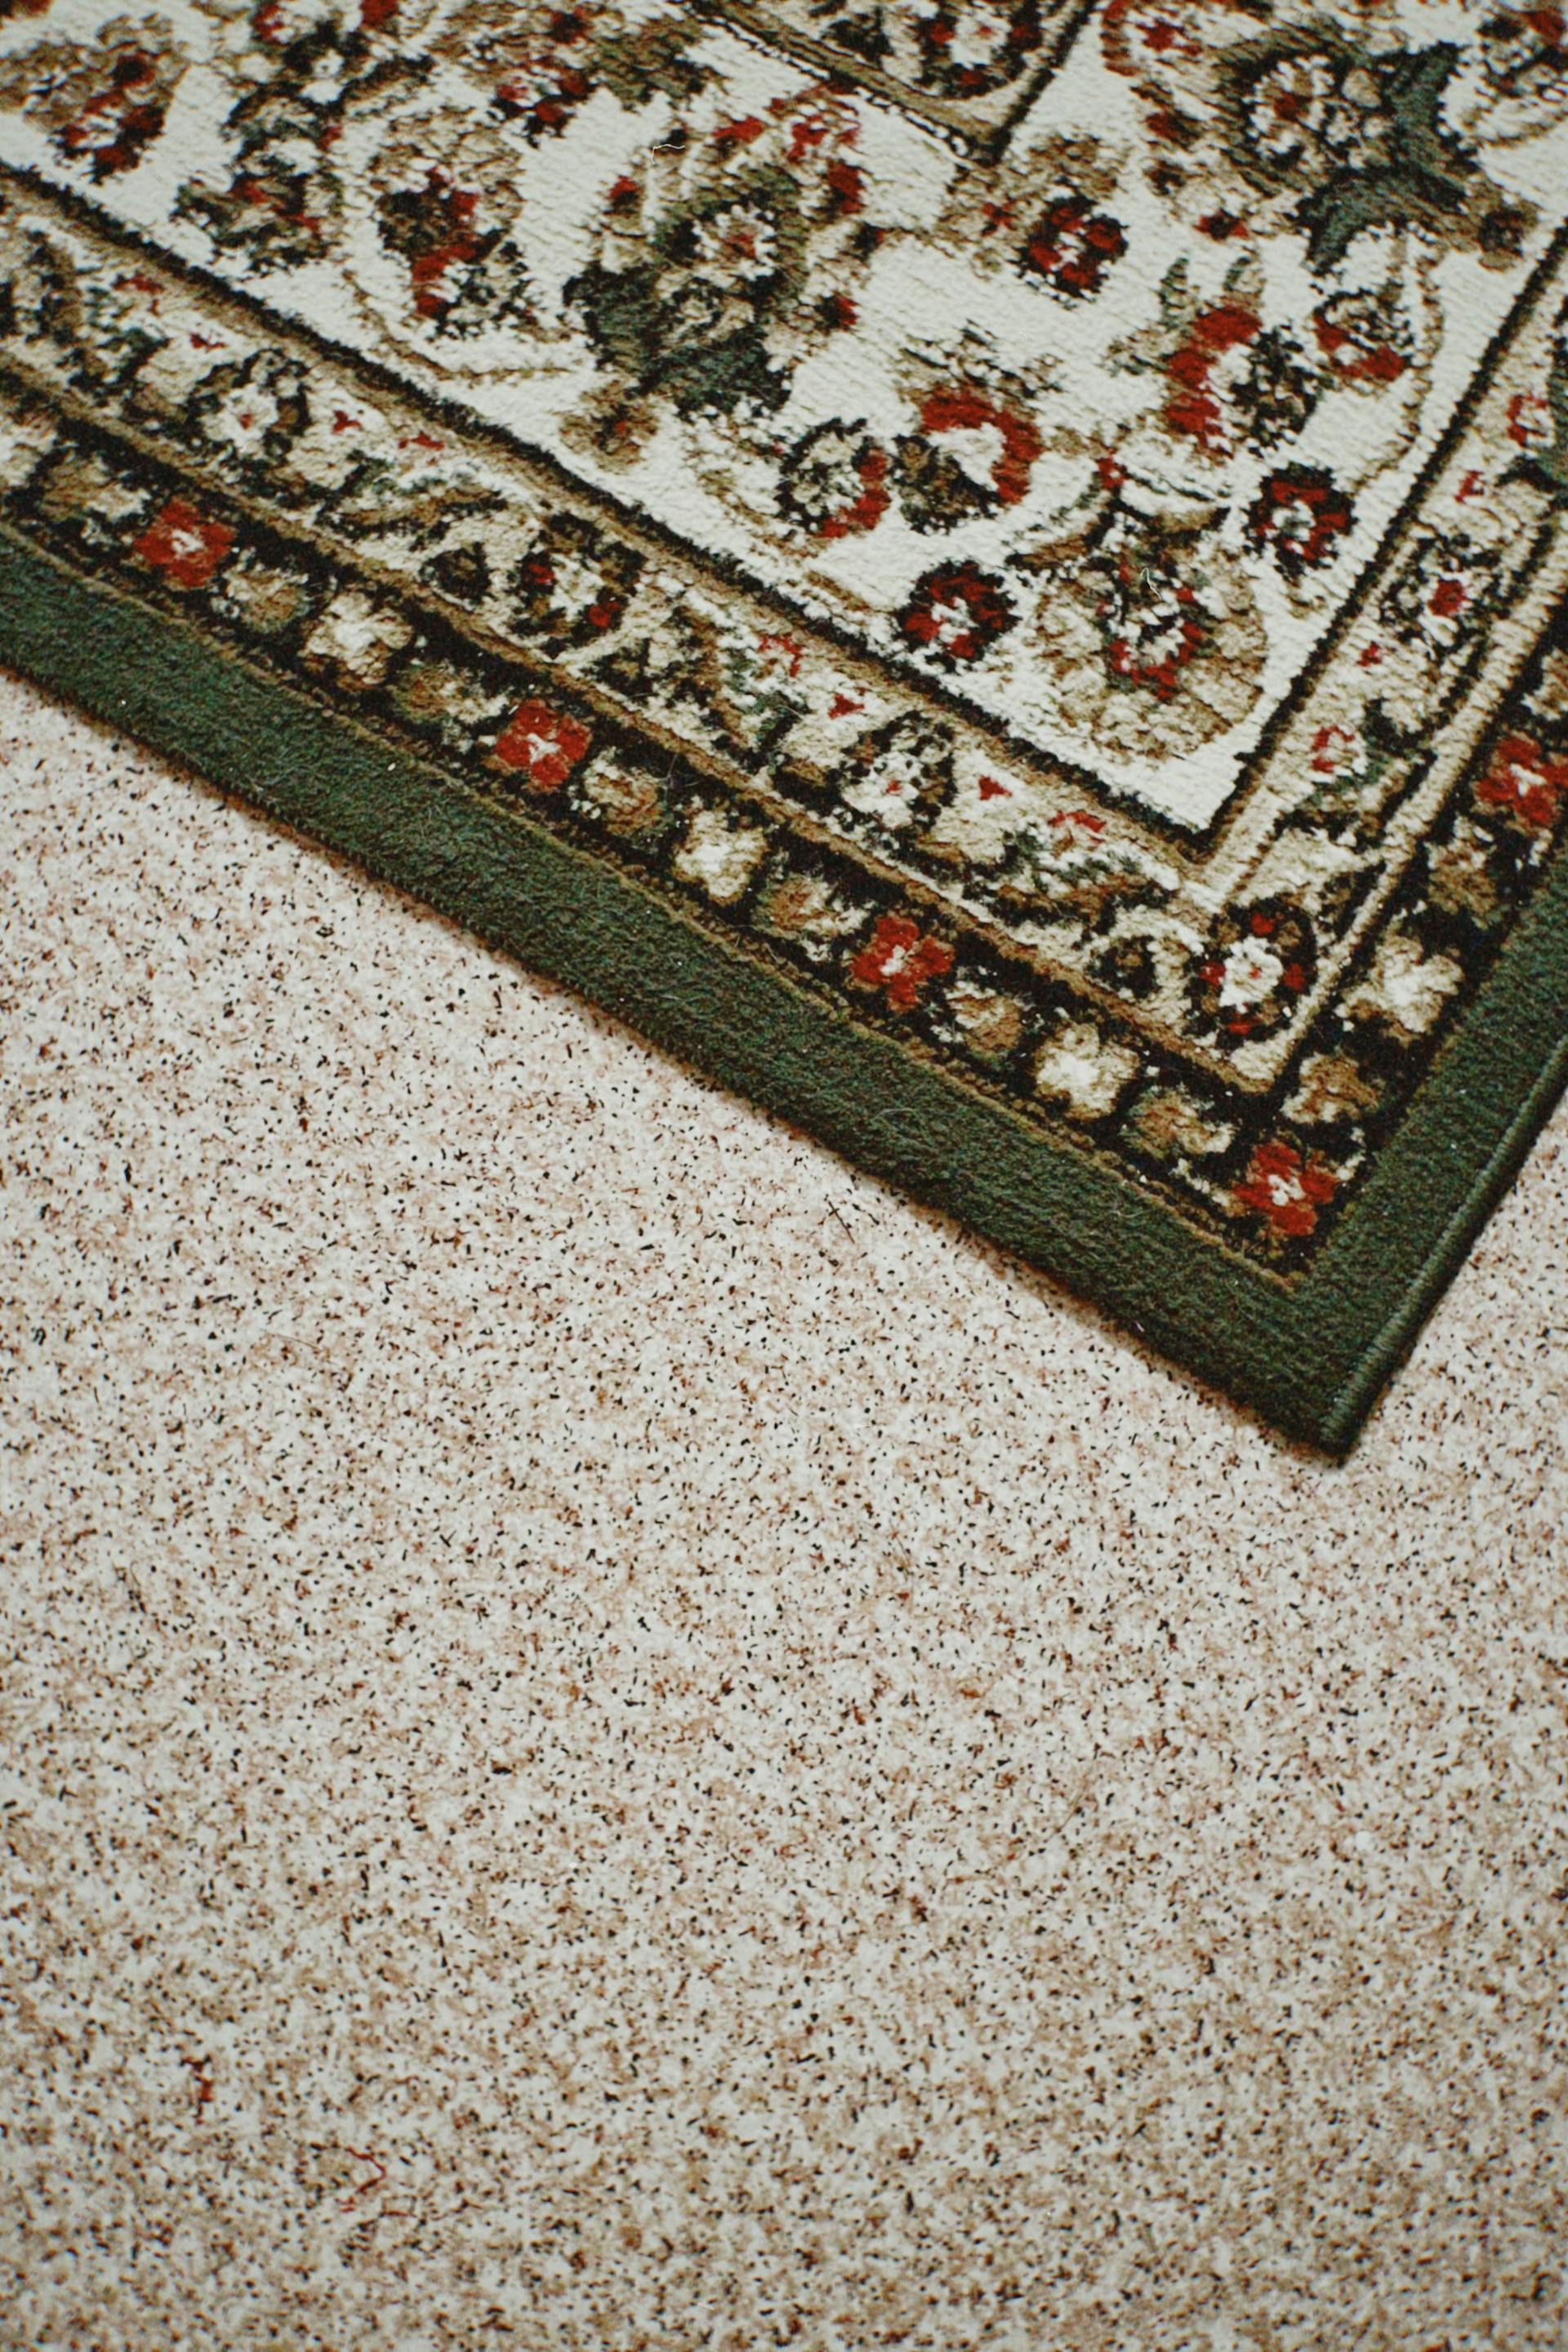 Eine Nahaufnahme eines Teppichs auf einem Teppichboden | Quelle: Pexels